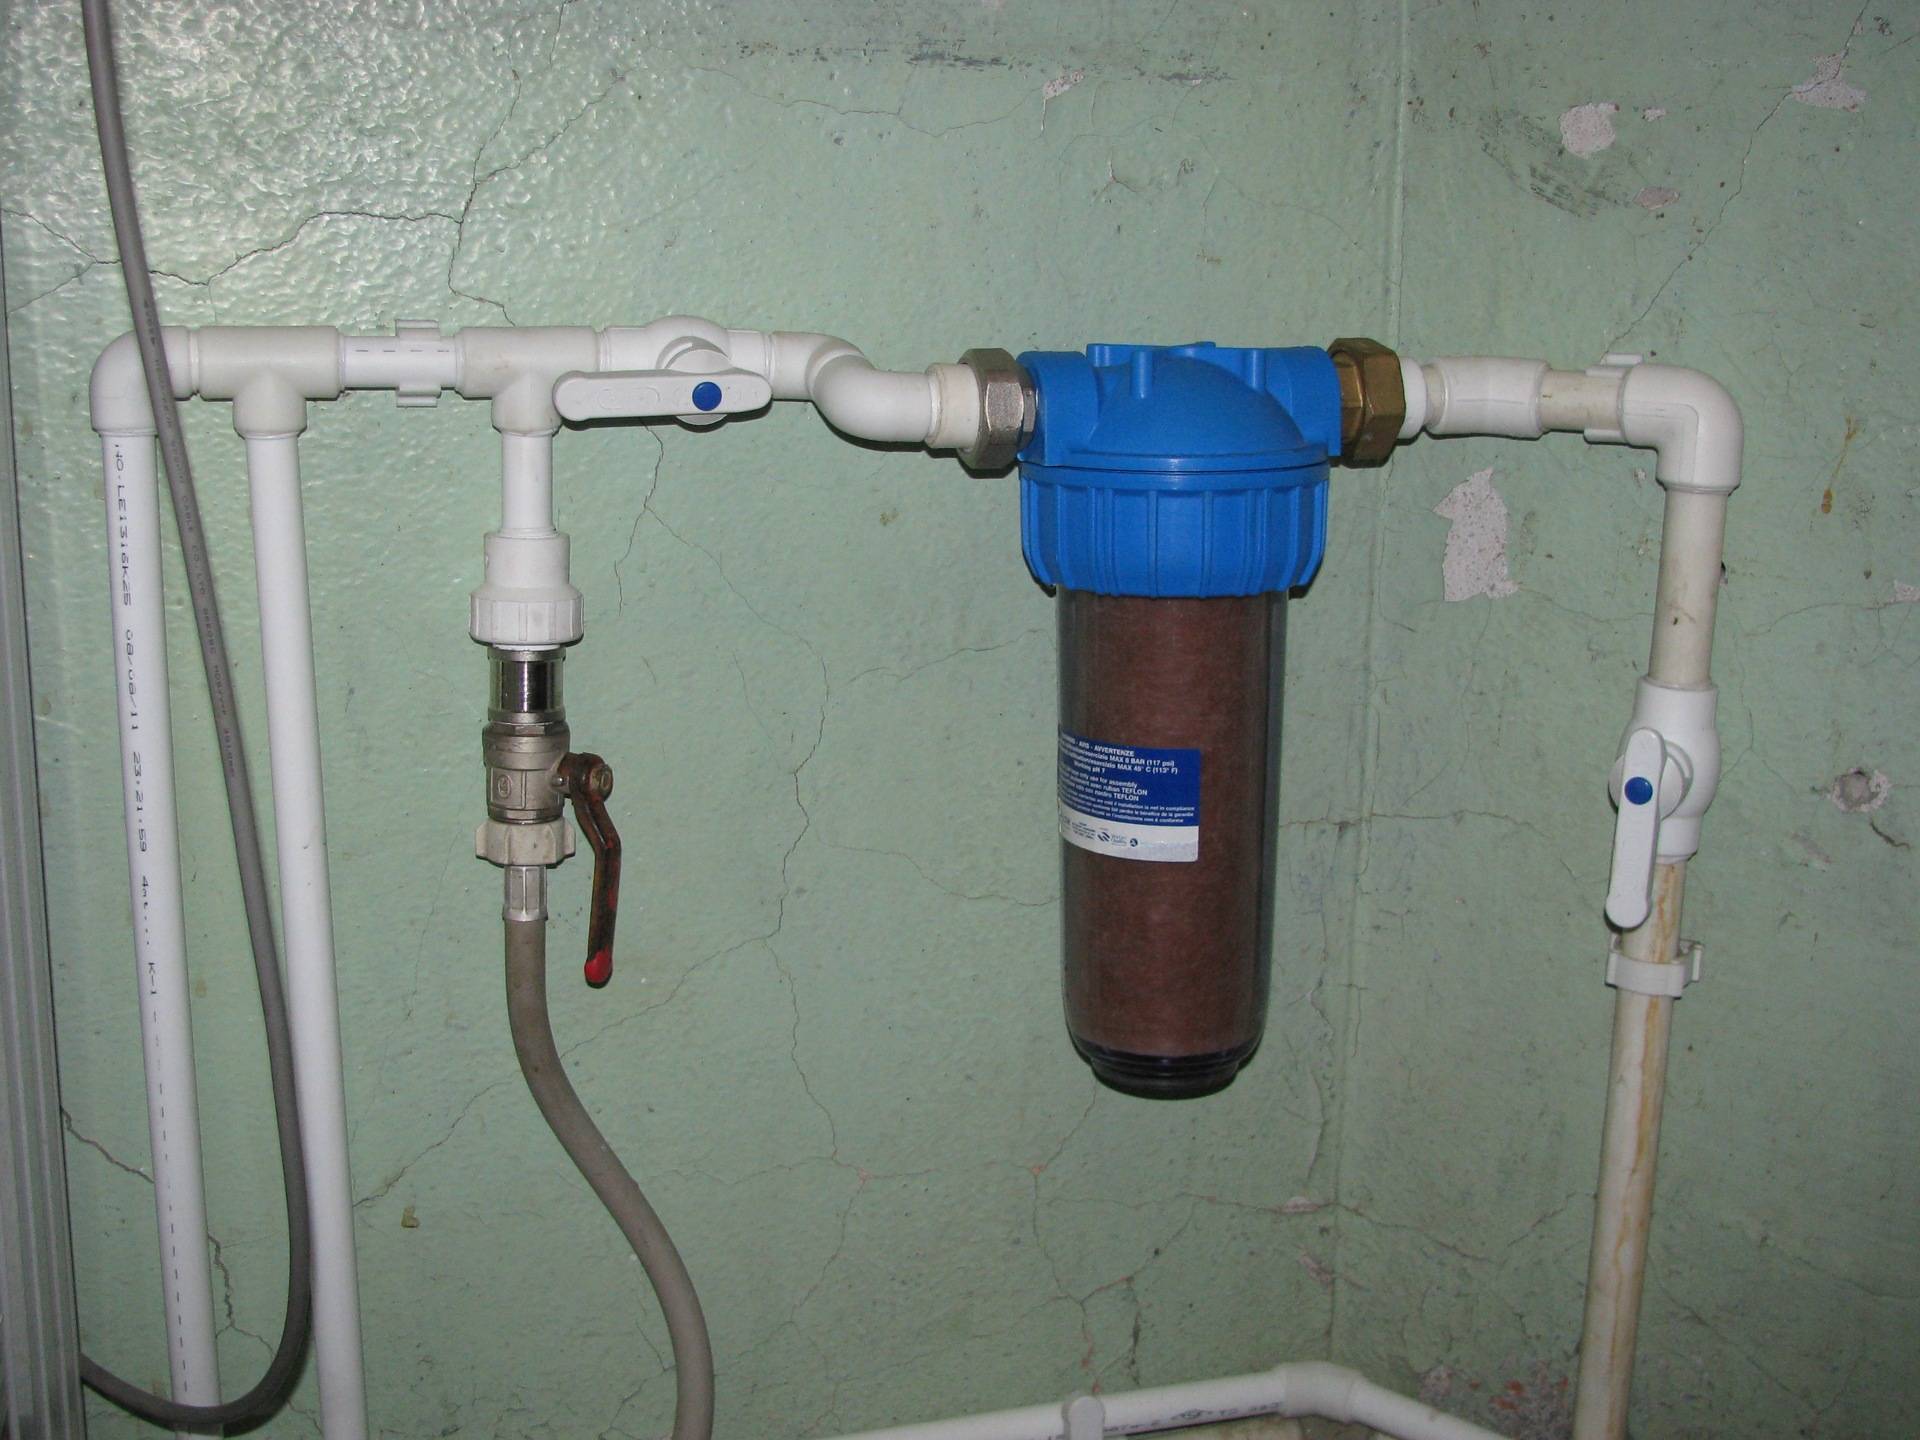 Установка фильтра для воды под мойку своими руками: пошаговая инструкция